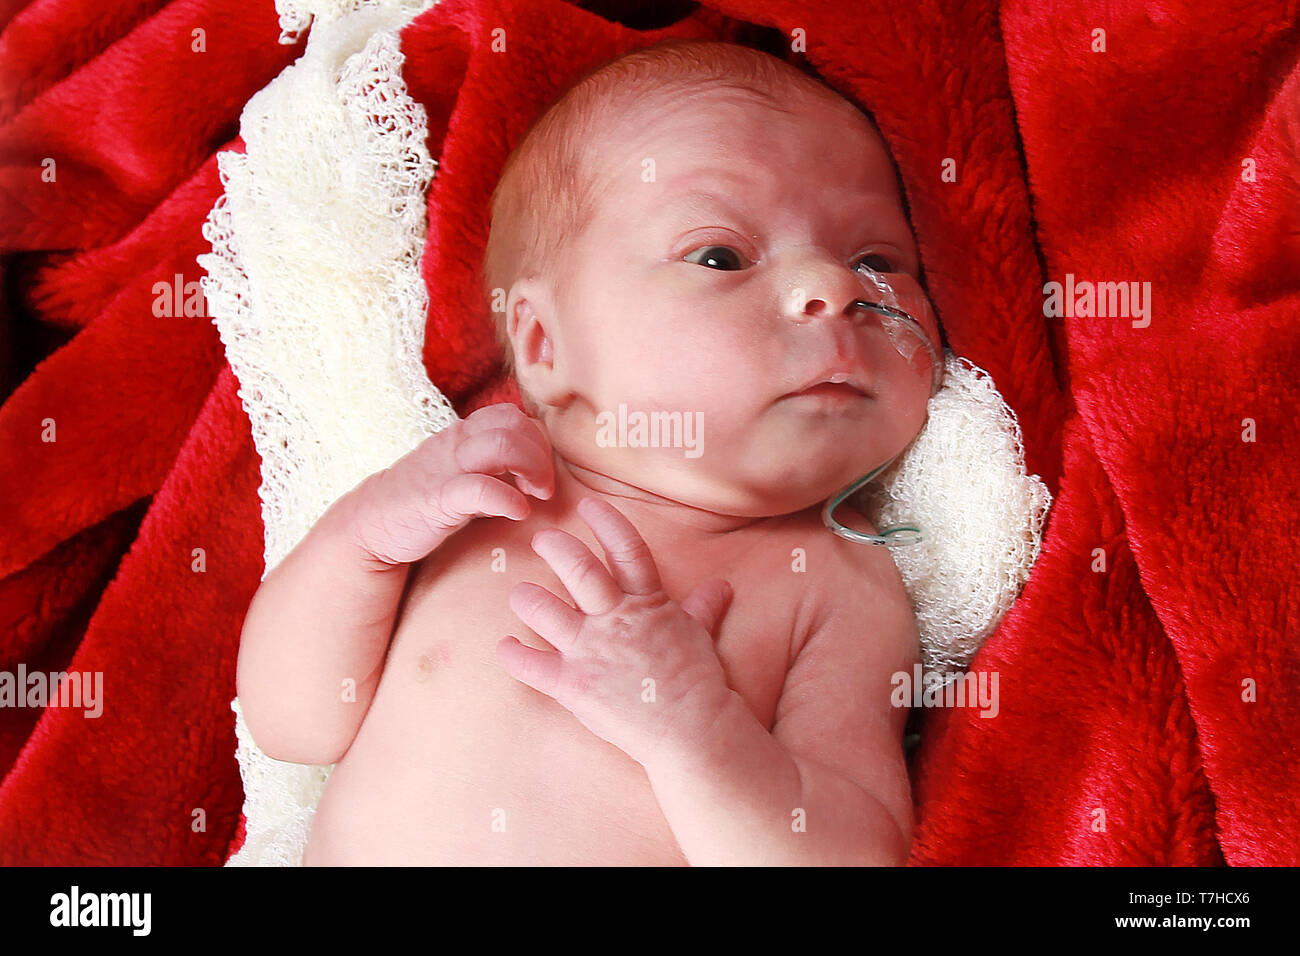 Bébé prématuré fille avec tube de gavage, tube NG Banque D'Images